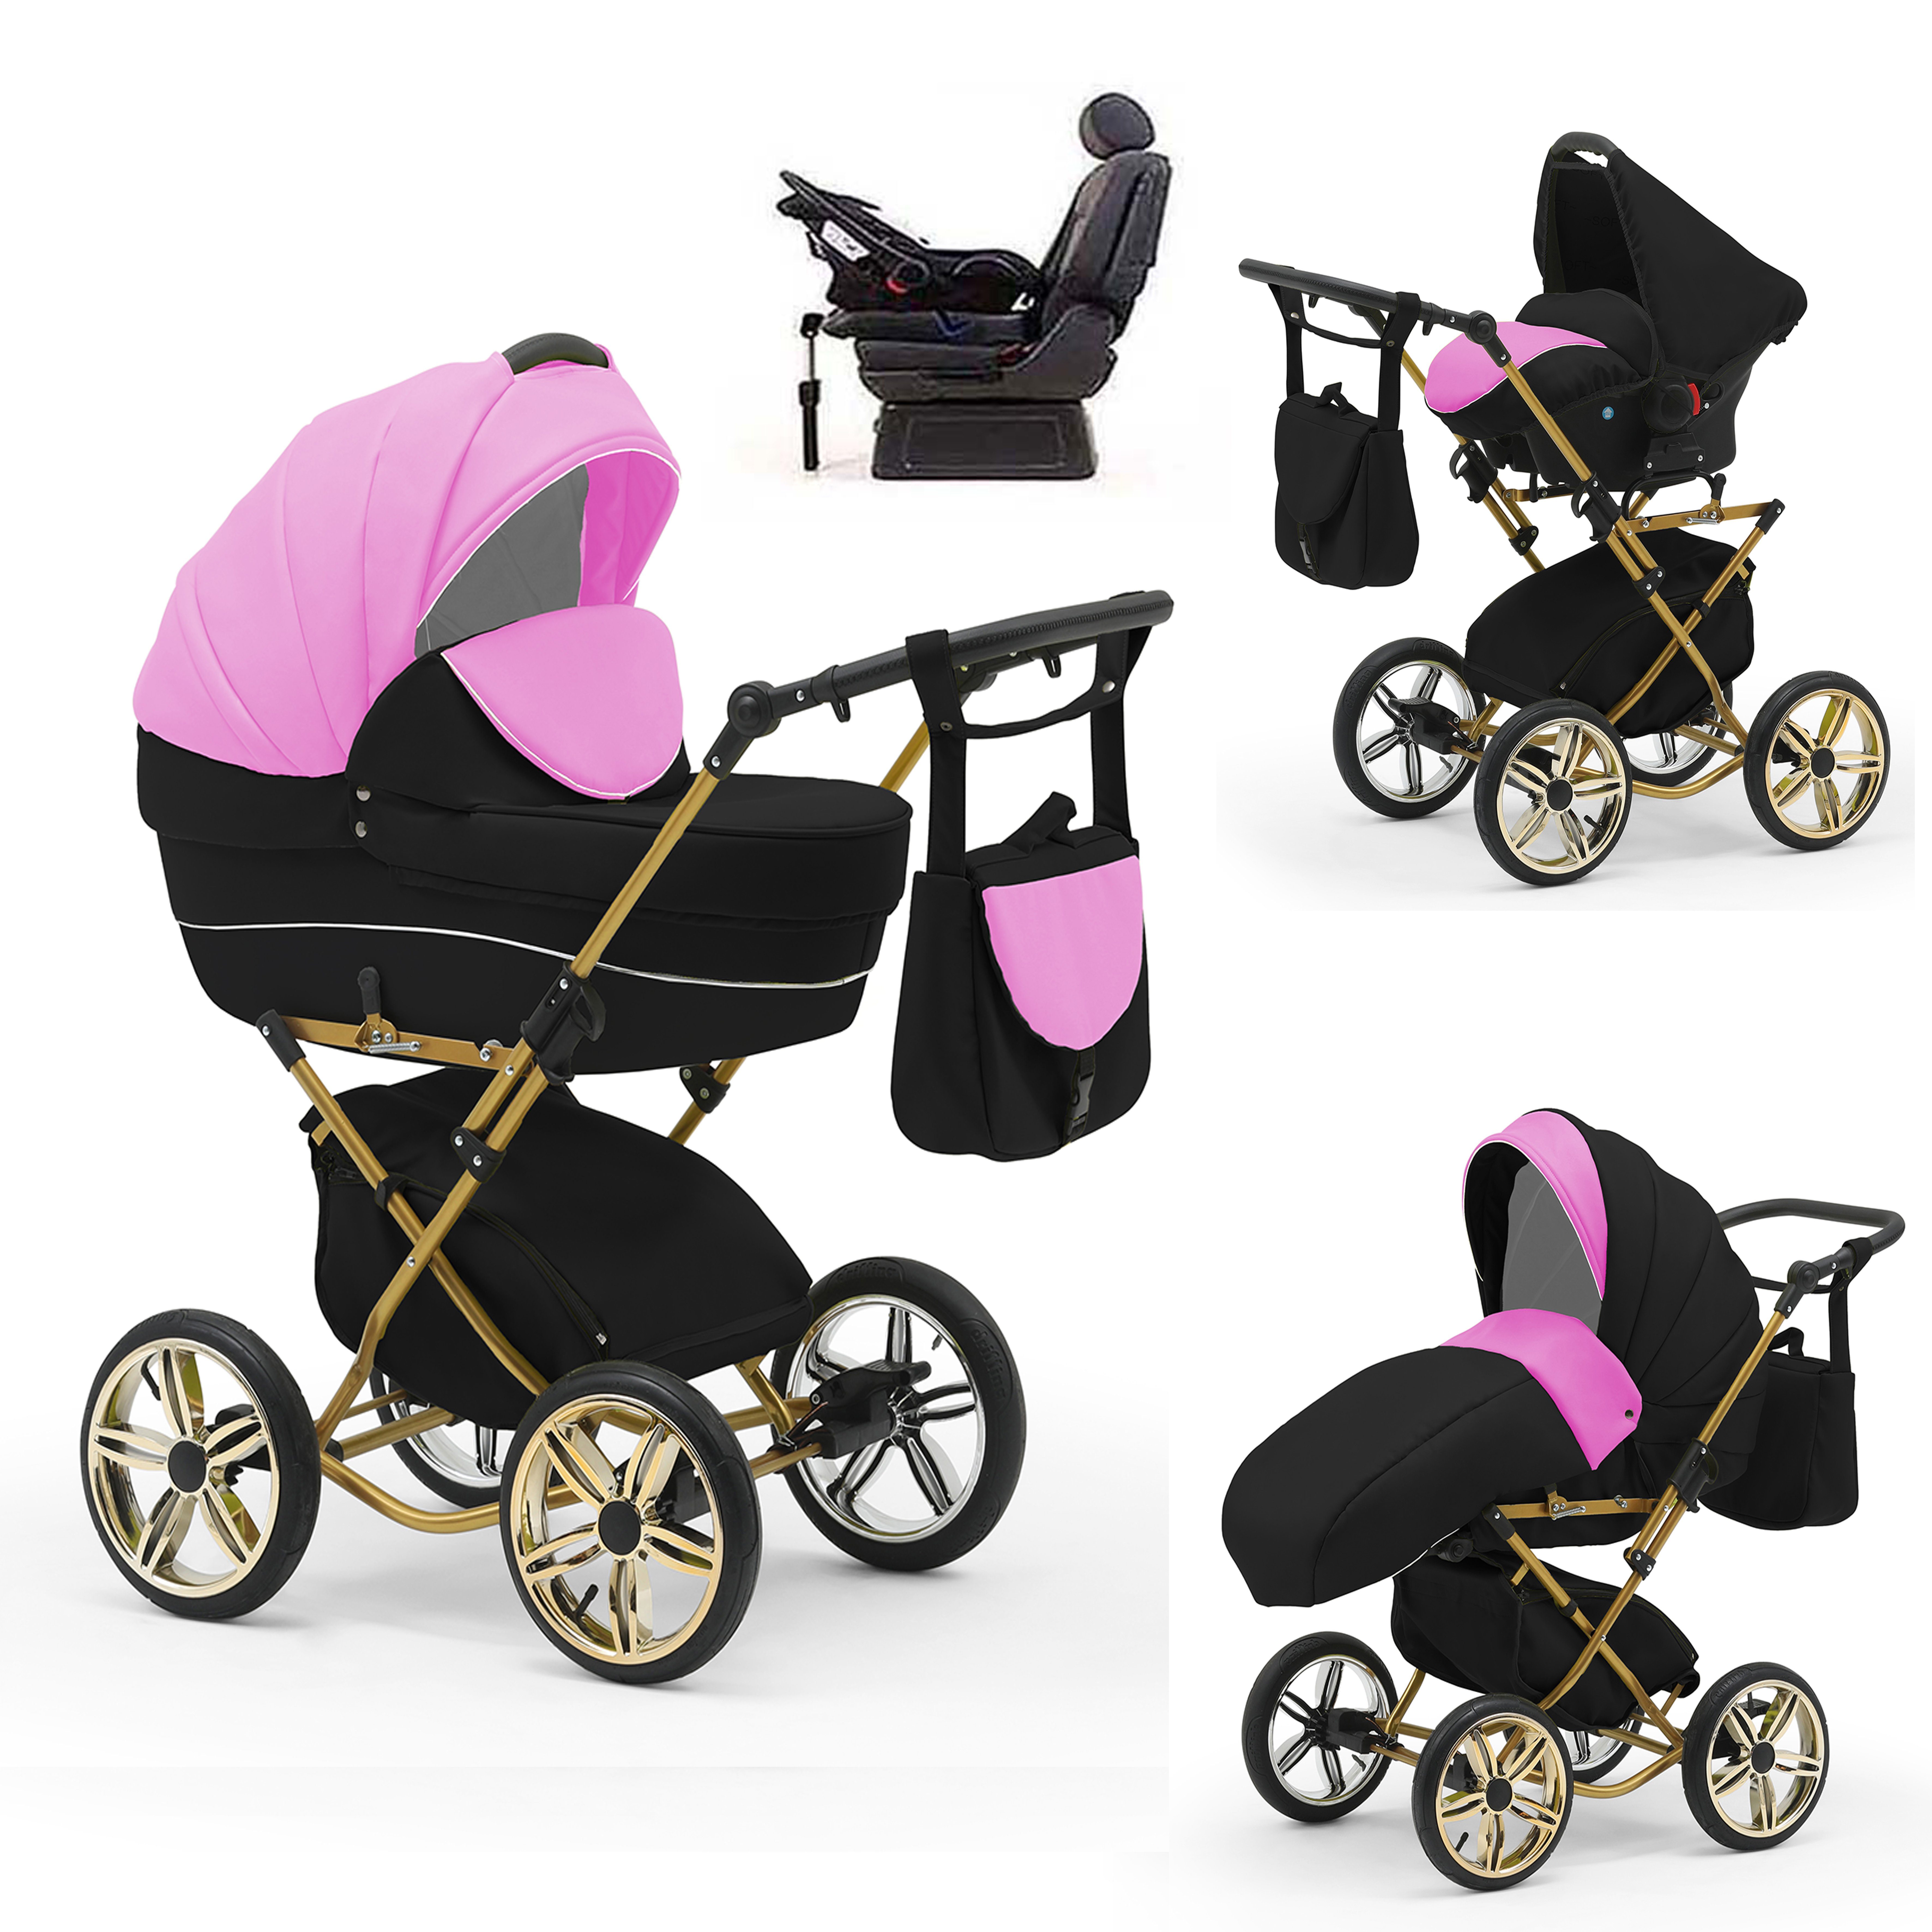 babies-on-wheels Kombi-Kinderwagen Sorento 4 in 1 inkl. Autositz und Iso Base - 14 Teile - in 10 Designs Pink-Schwarz